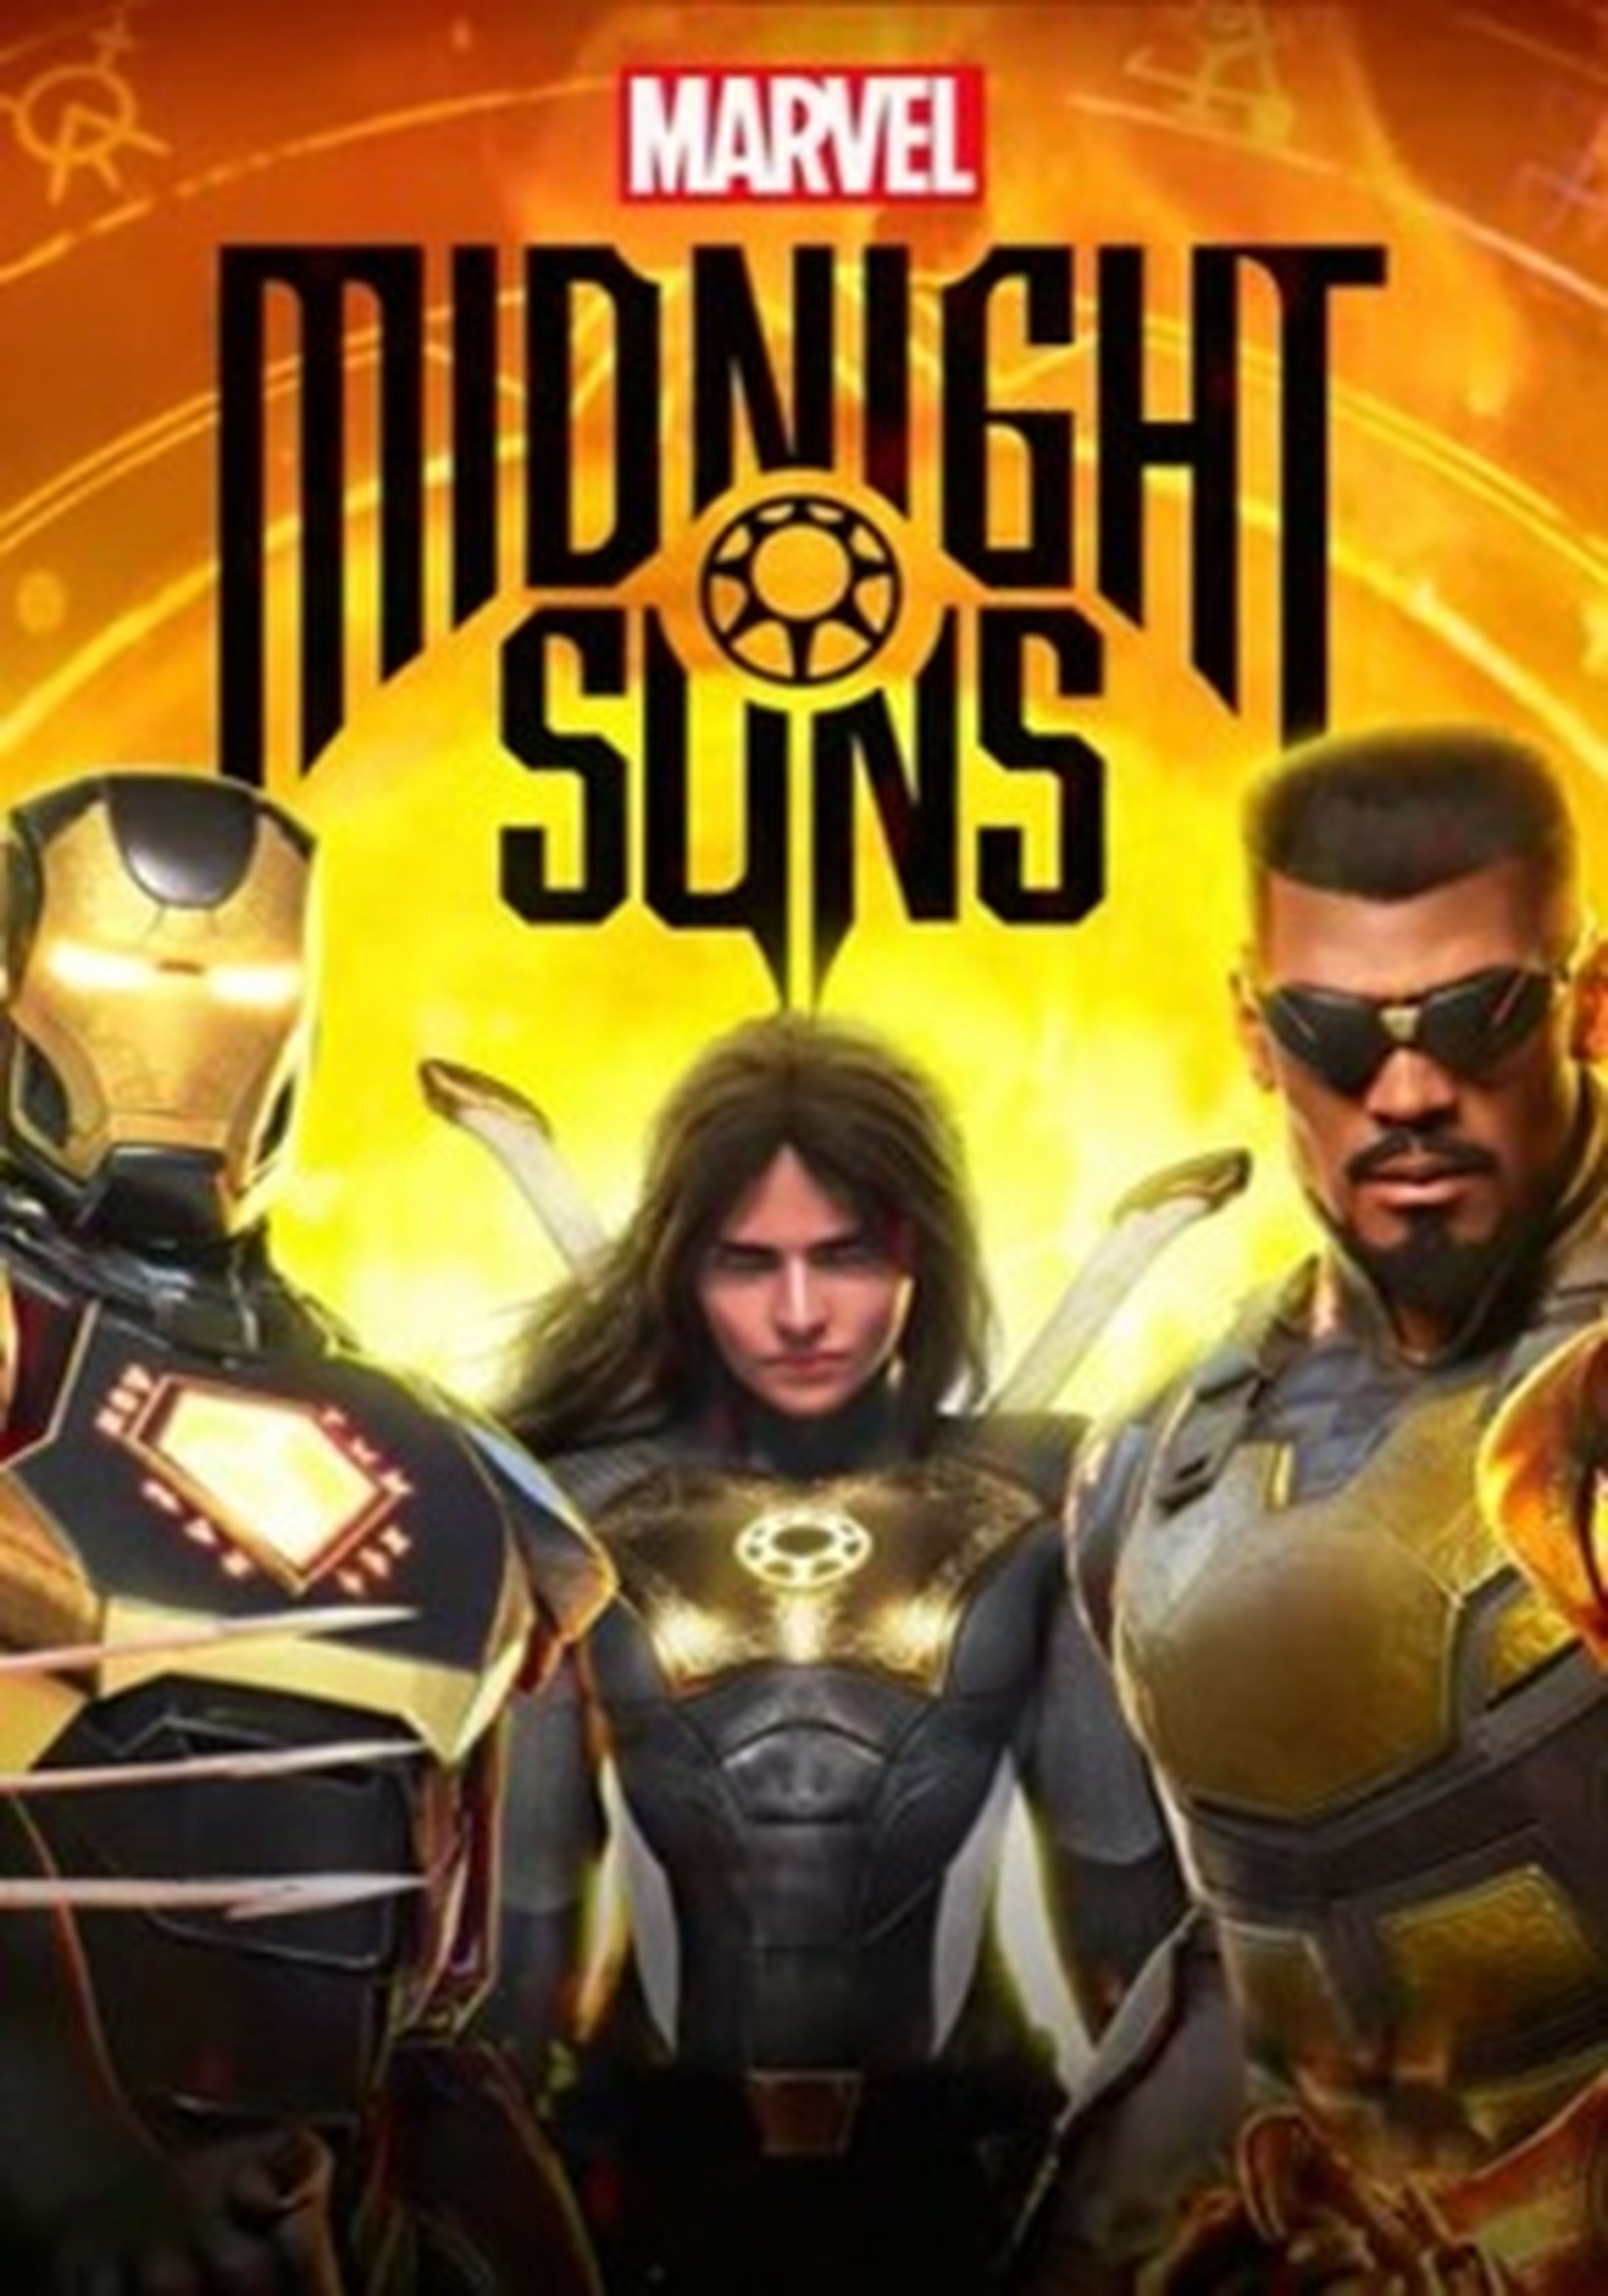 Marvel's Midnight Suns cartel